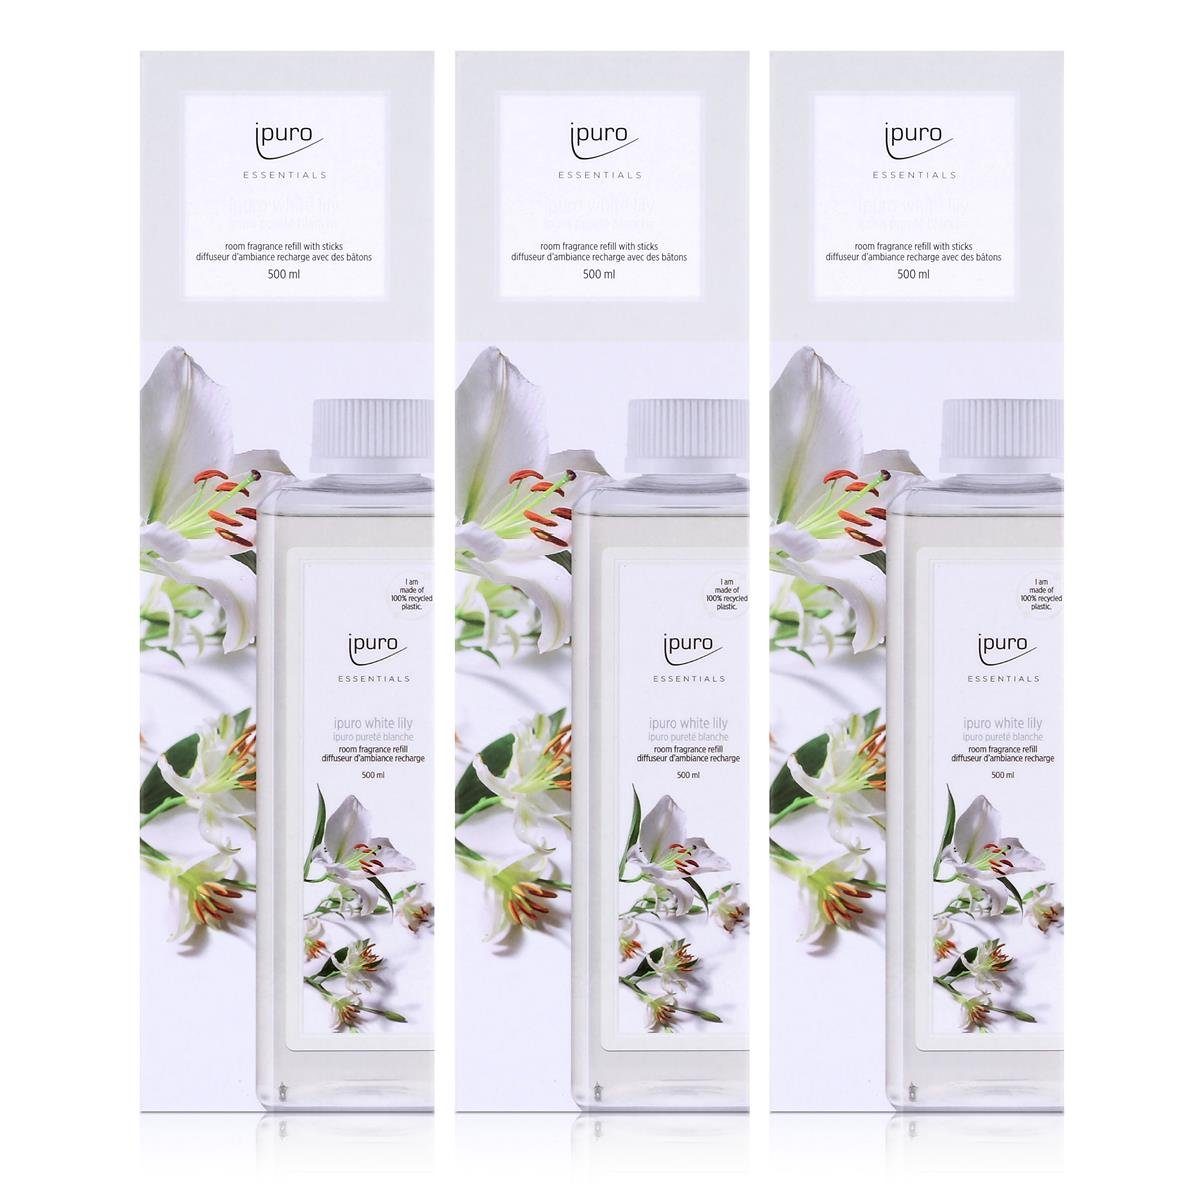 IPURO Nachfüllflasche Refill 500ml Raumduft Ipuro lily white Essentials (3er Raumduft